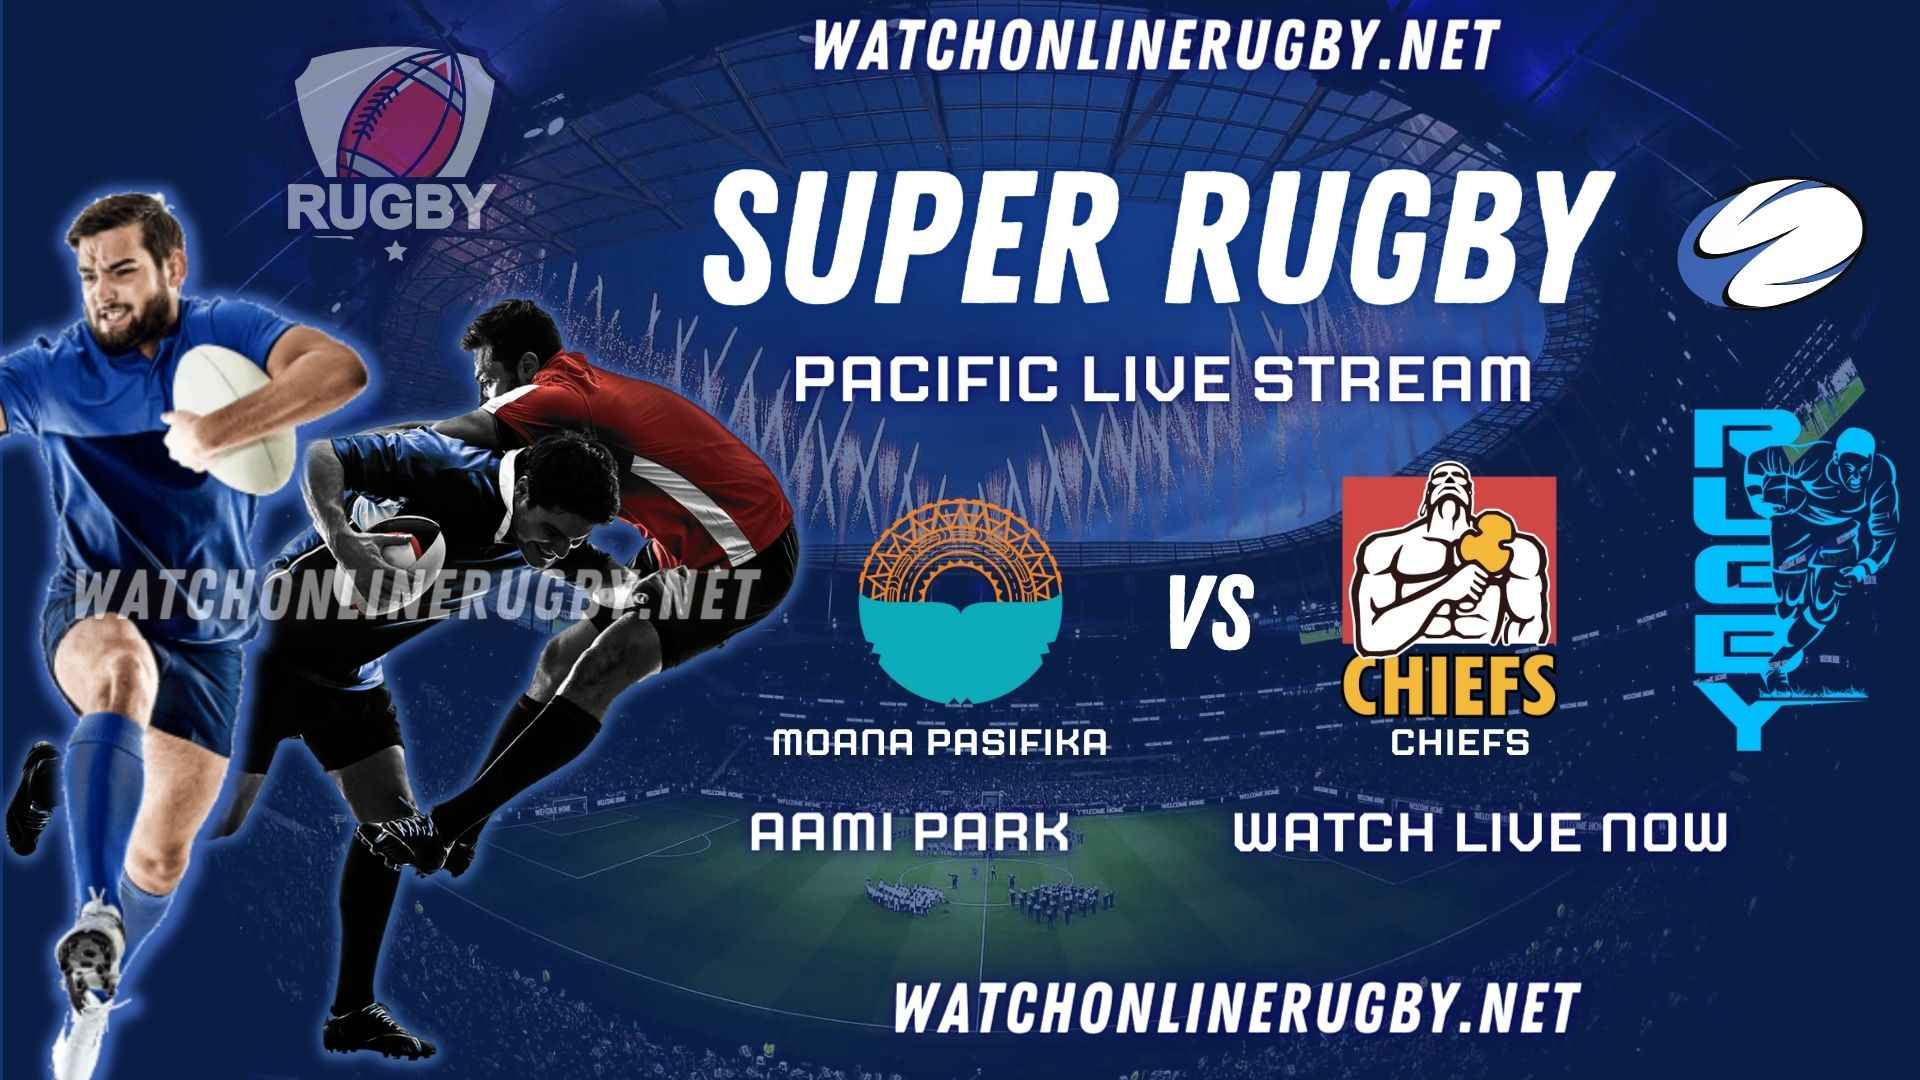 moana-pasifika-vs-chiefs-rugby-live